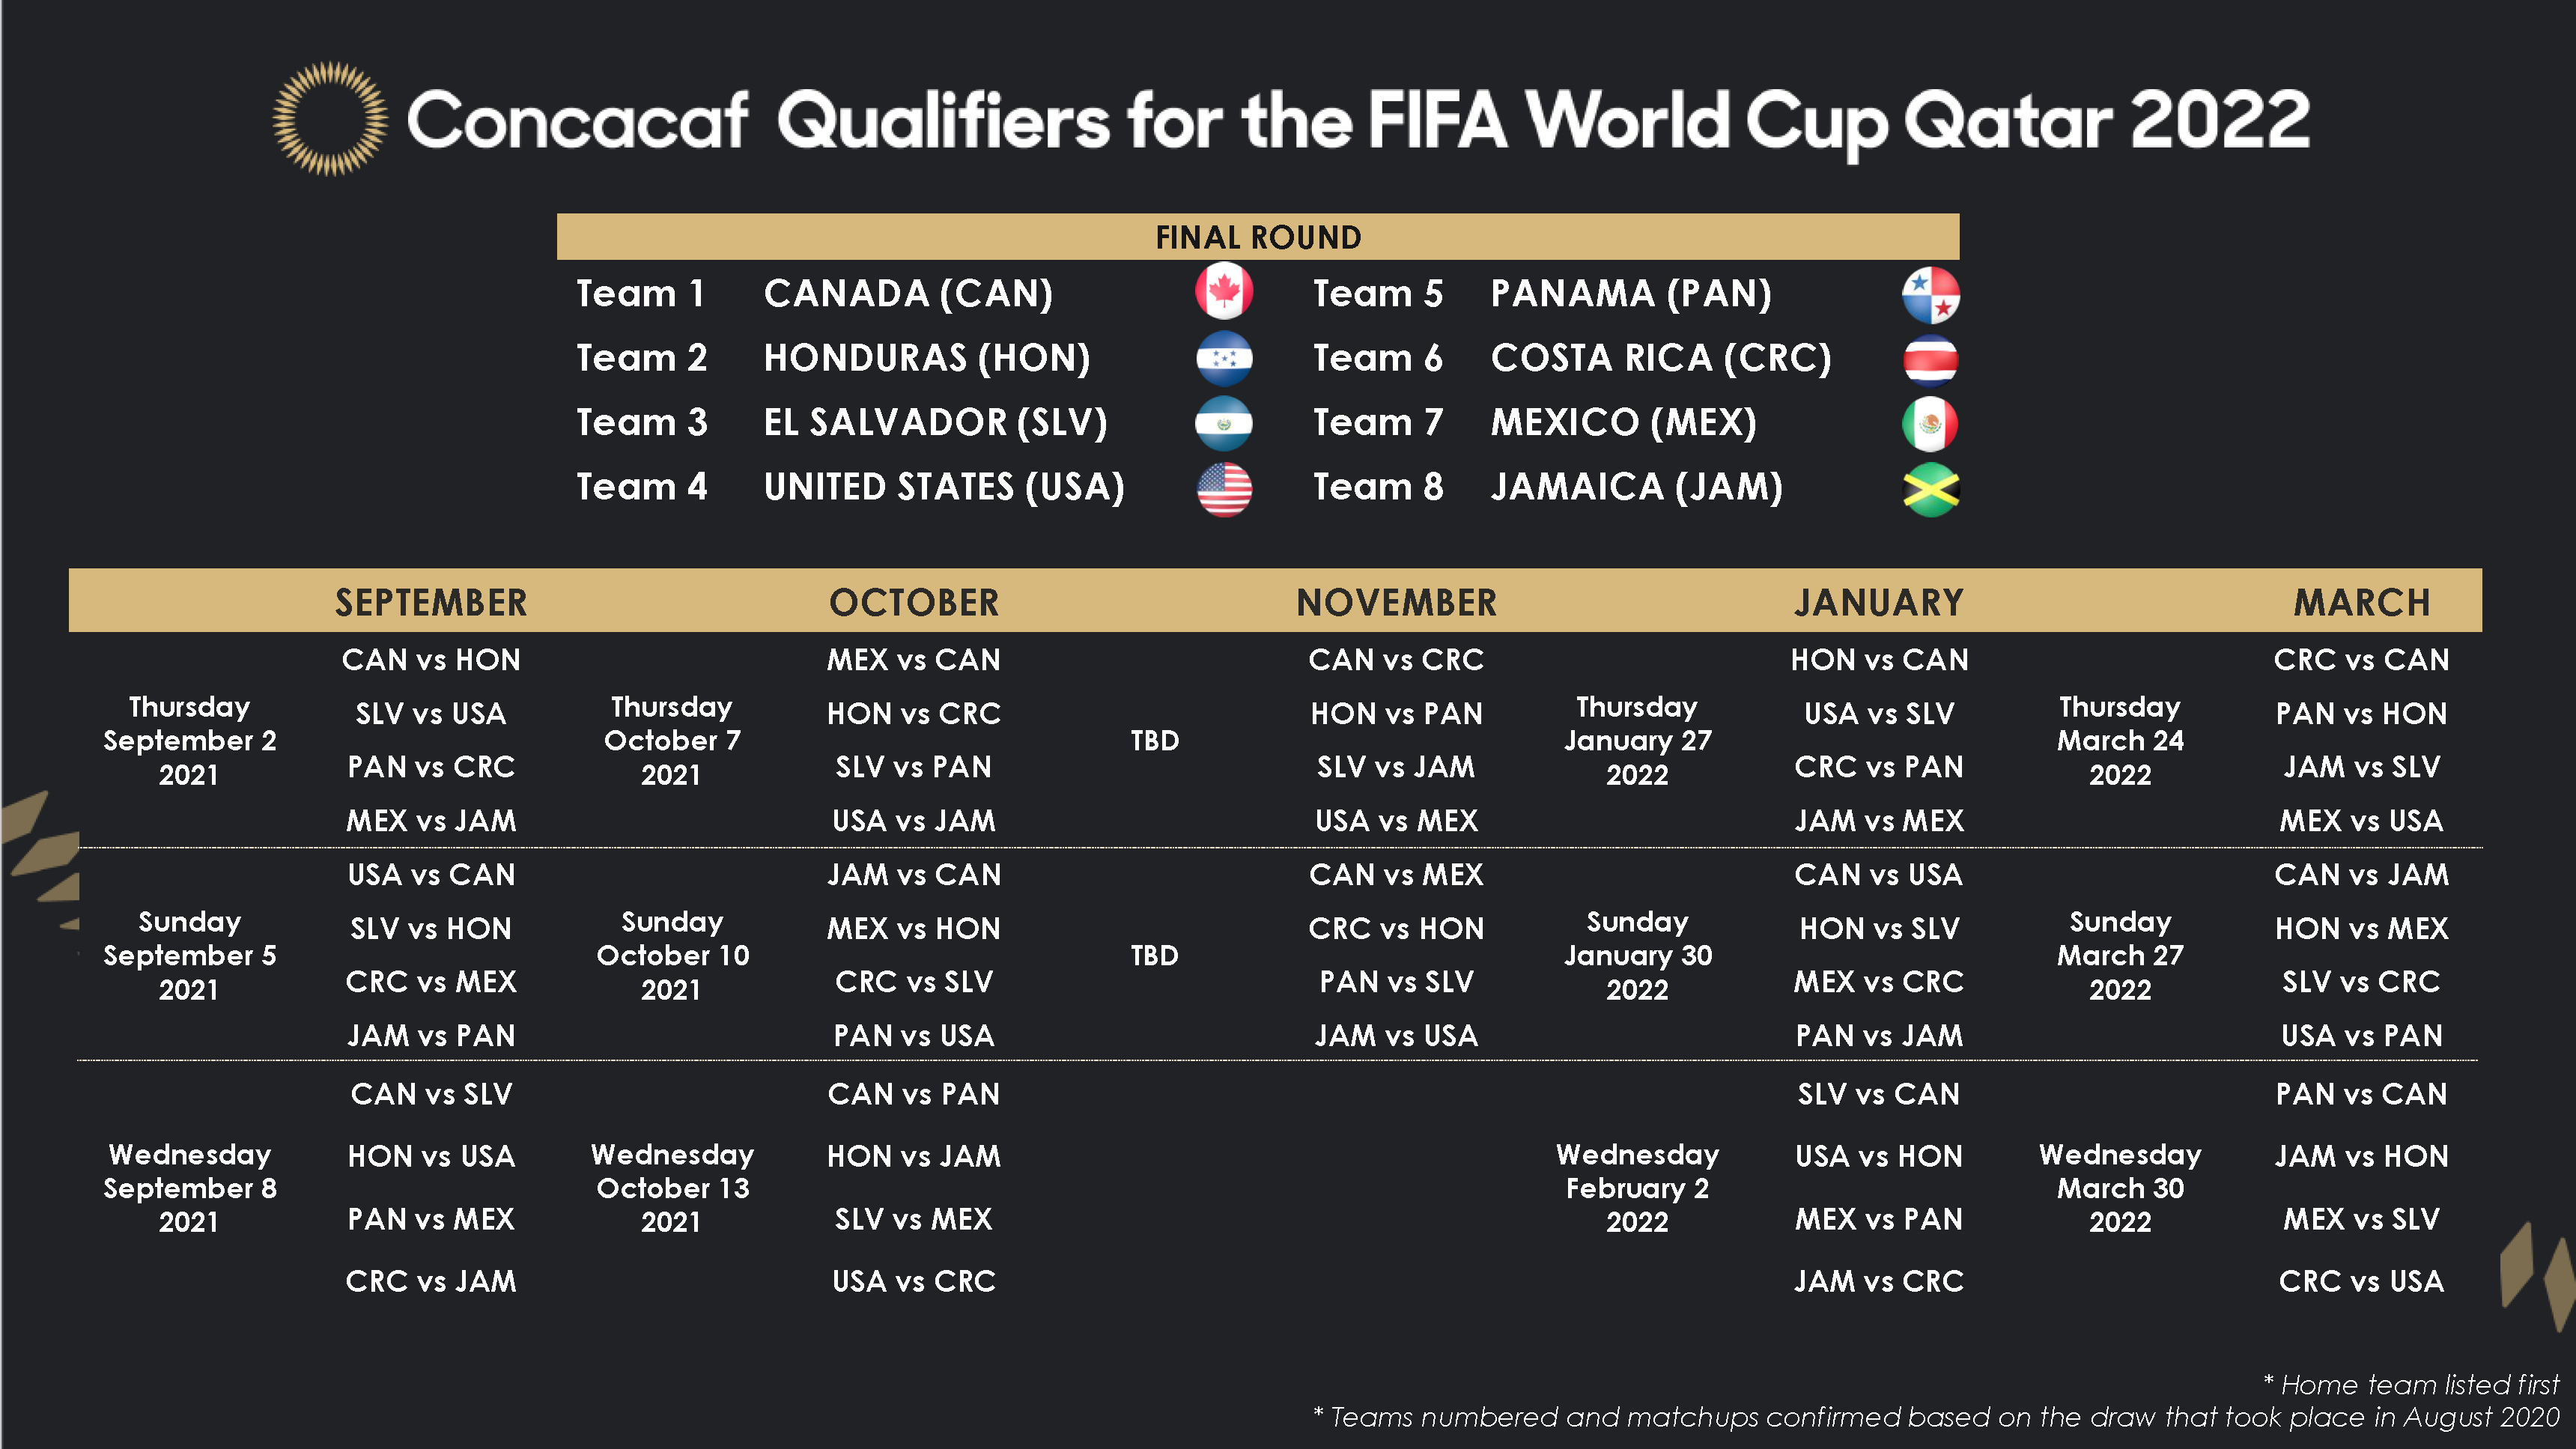 Fifa World Cup 2022 Calendar Concacaf On Twitter: "Here Is The Final Round Calendar For The Concacaf  Qualifiers For The Fifa World Cup Qatar 2022👇 🗓️ Reserva Las Fechas, El  Calendario De Las Clasificatorias De Concacaf Para